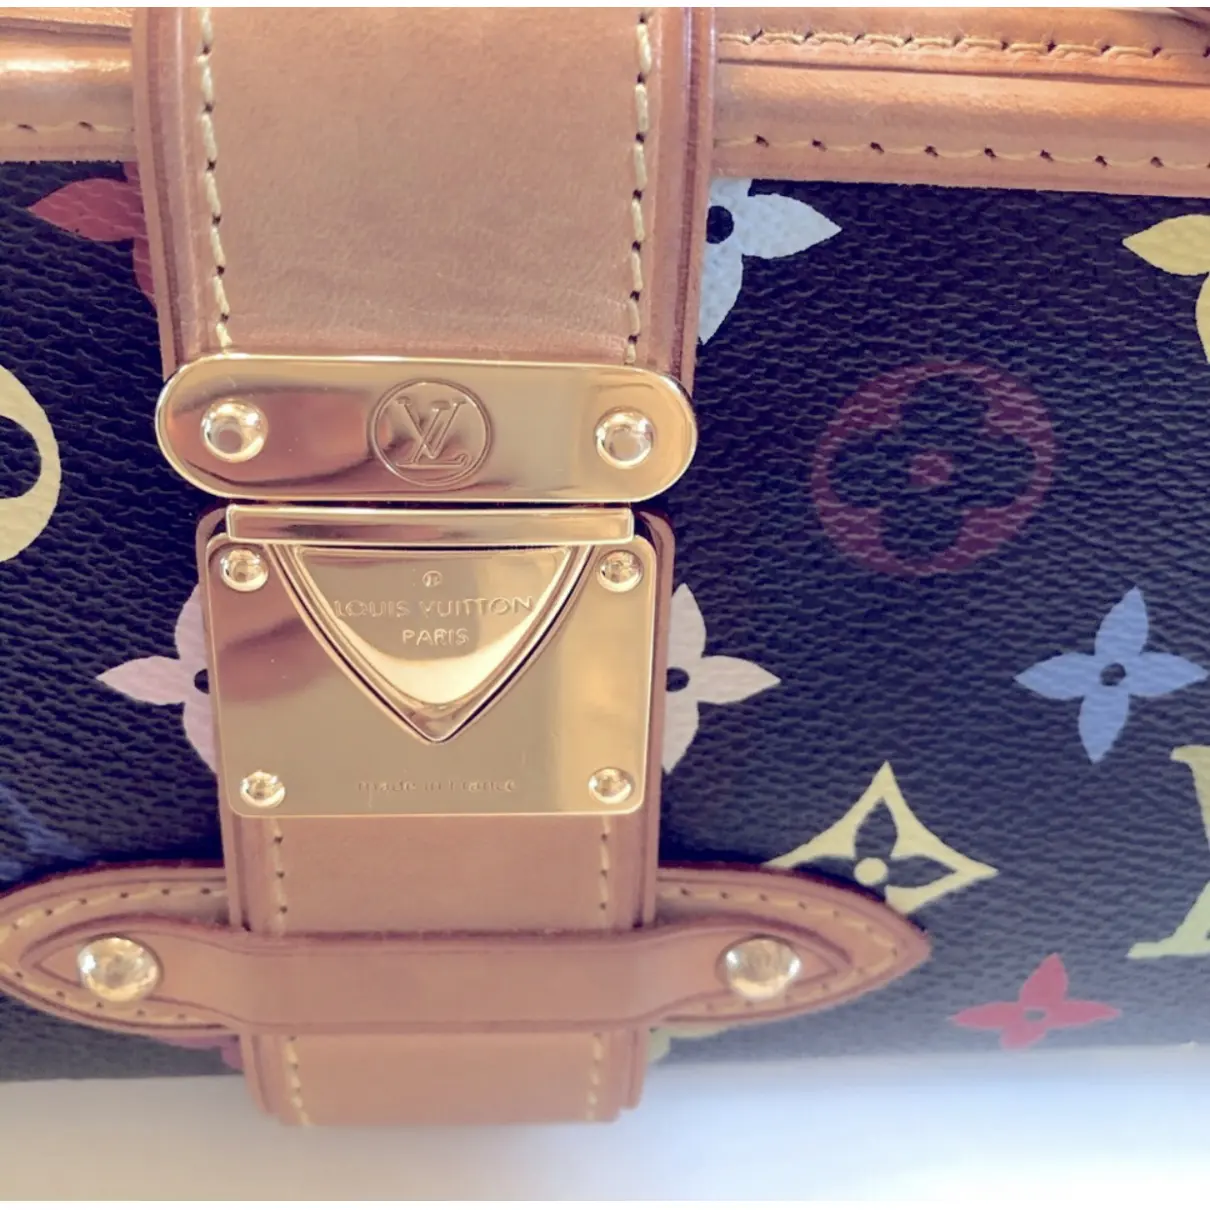 Shirley cloth handbag Louis Vuitton